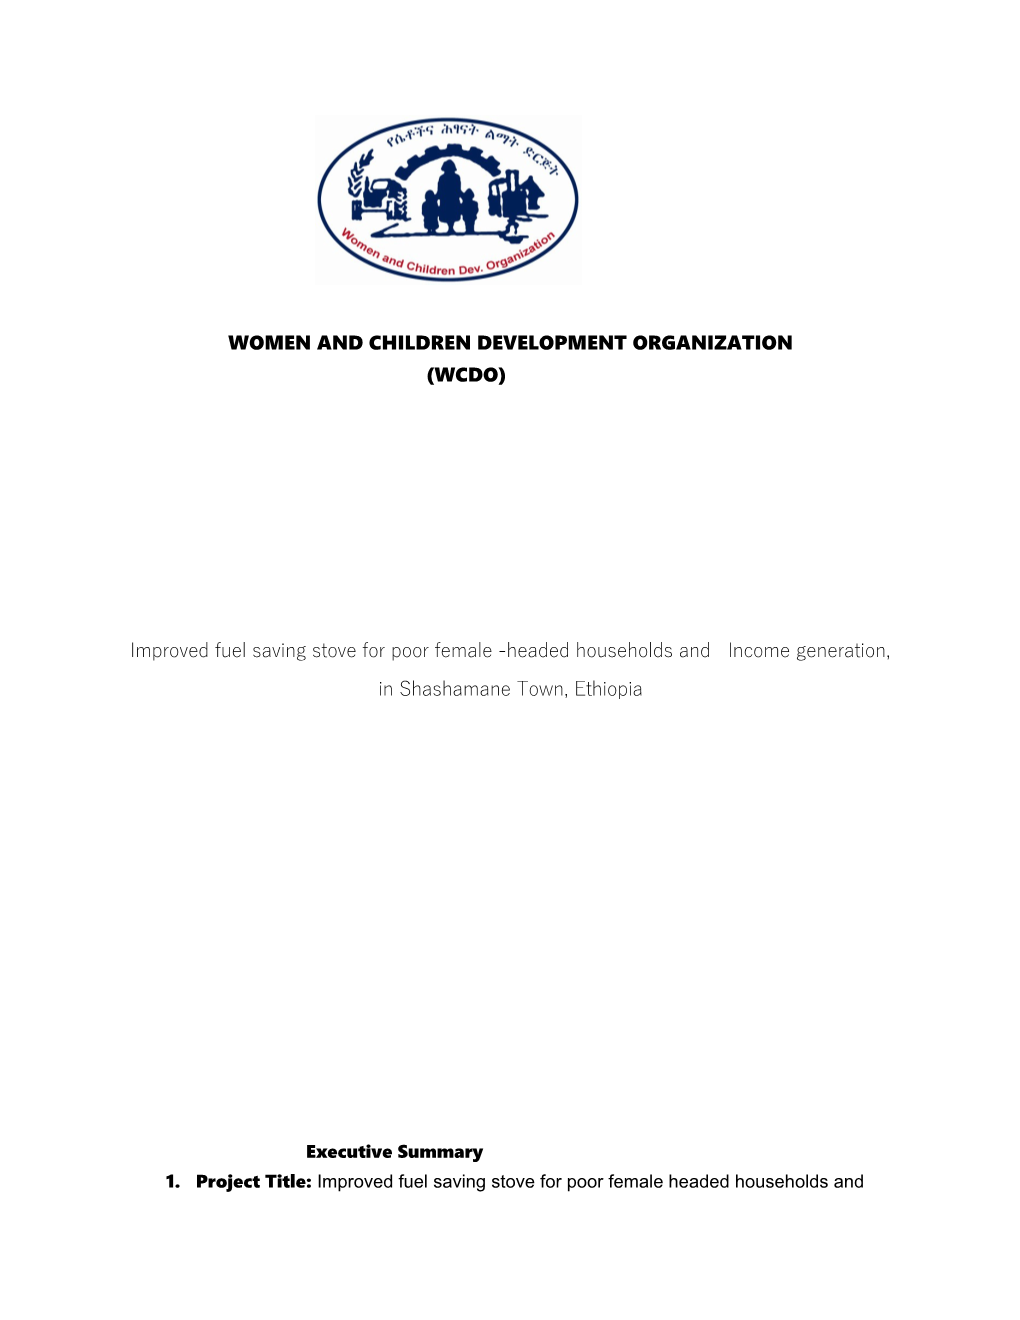 Women and Children Development Organization